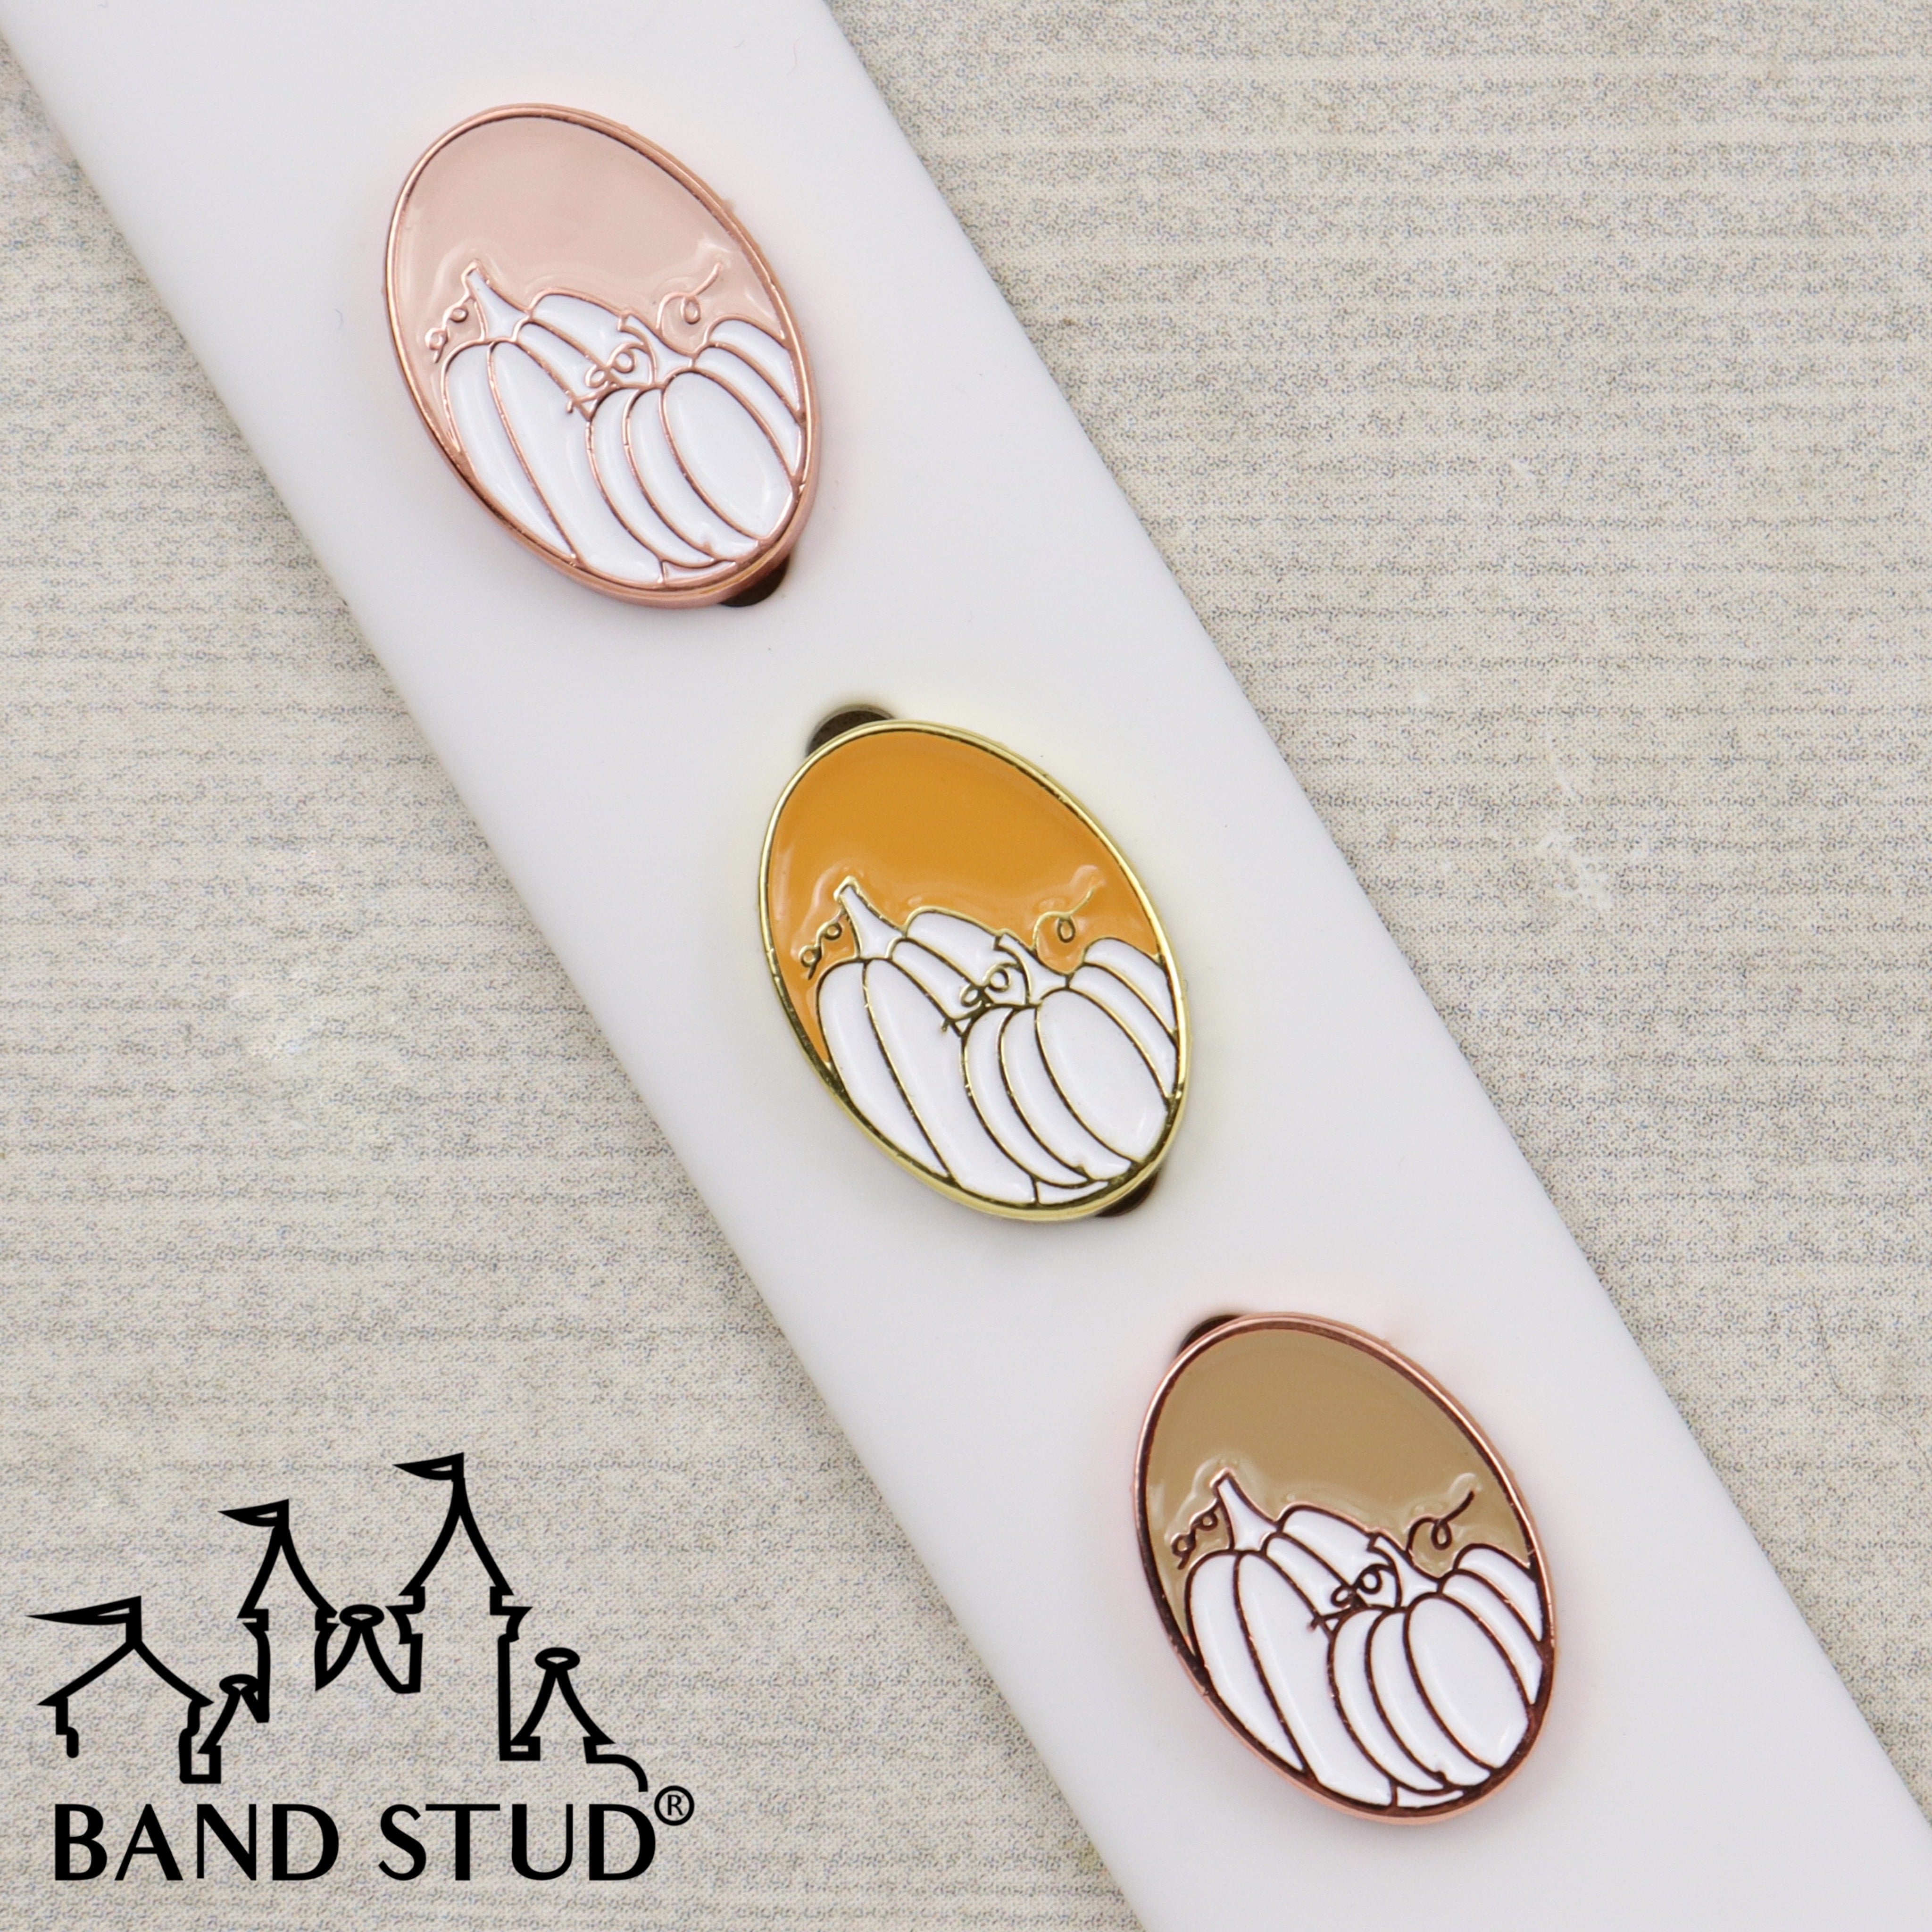 Band Stud® - The Neutrals - Pumpkin Patch